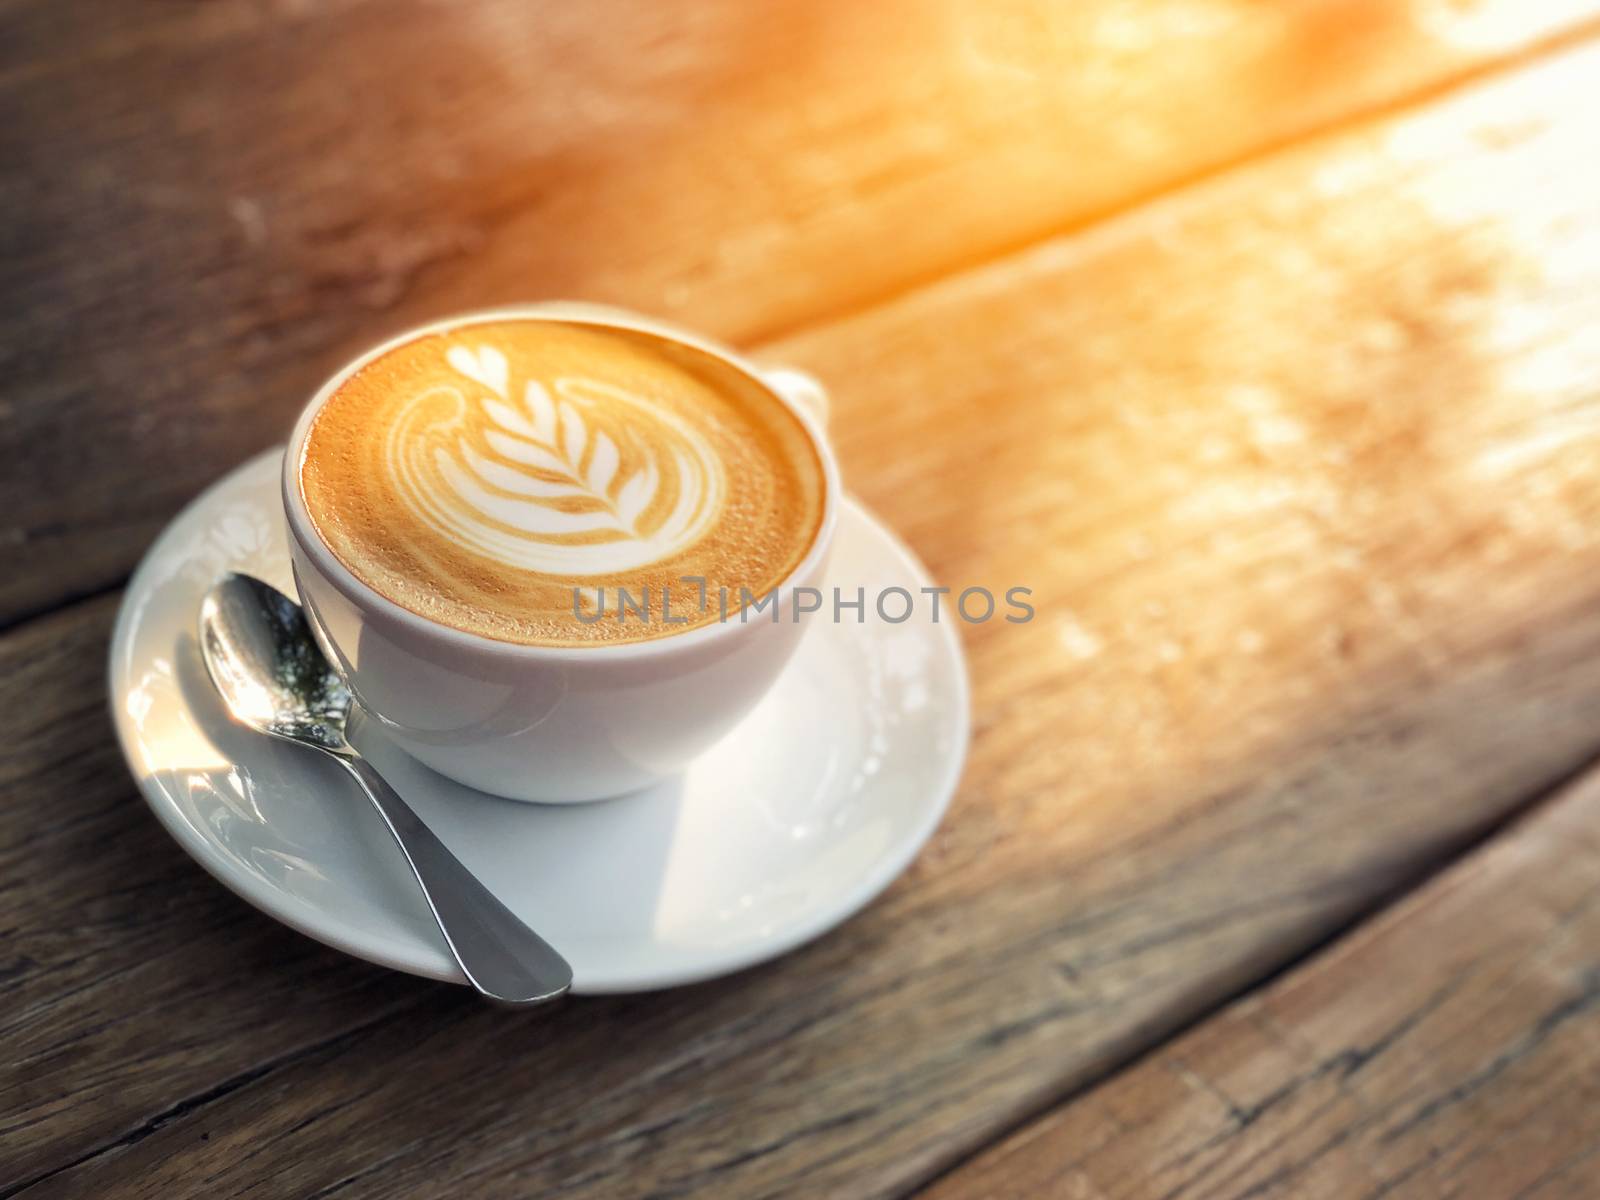 Coffee cup latte art in morning by Surasak